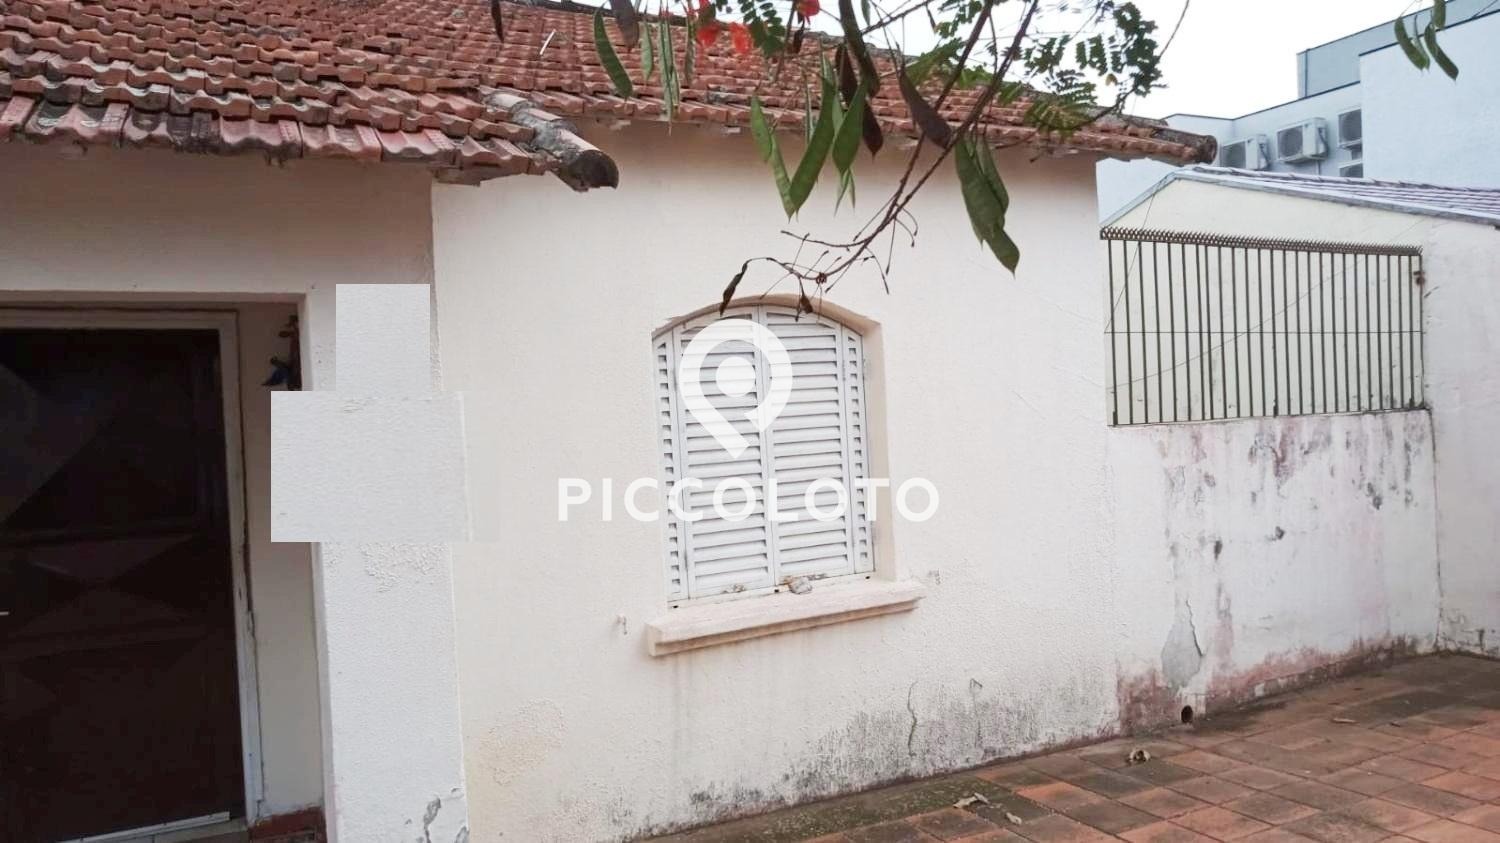 Piccoloto -Casa à venda no Jardim Bela Vista em Campinas